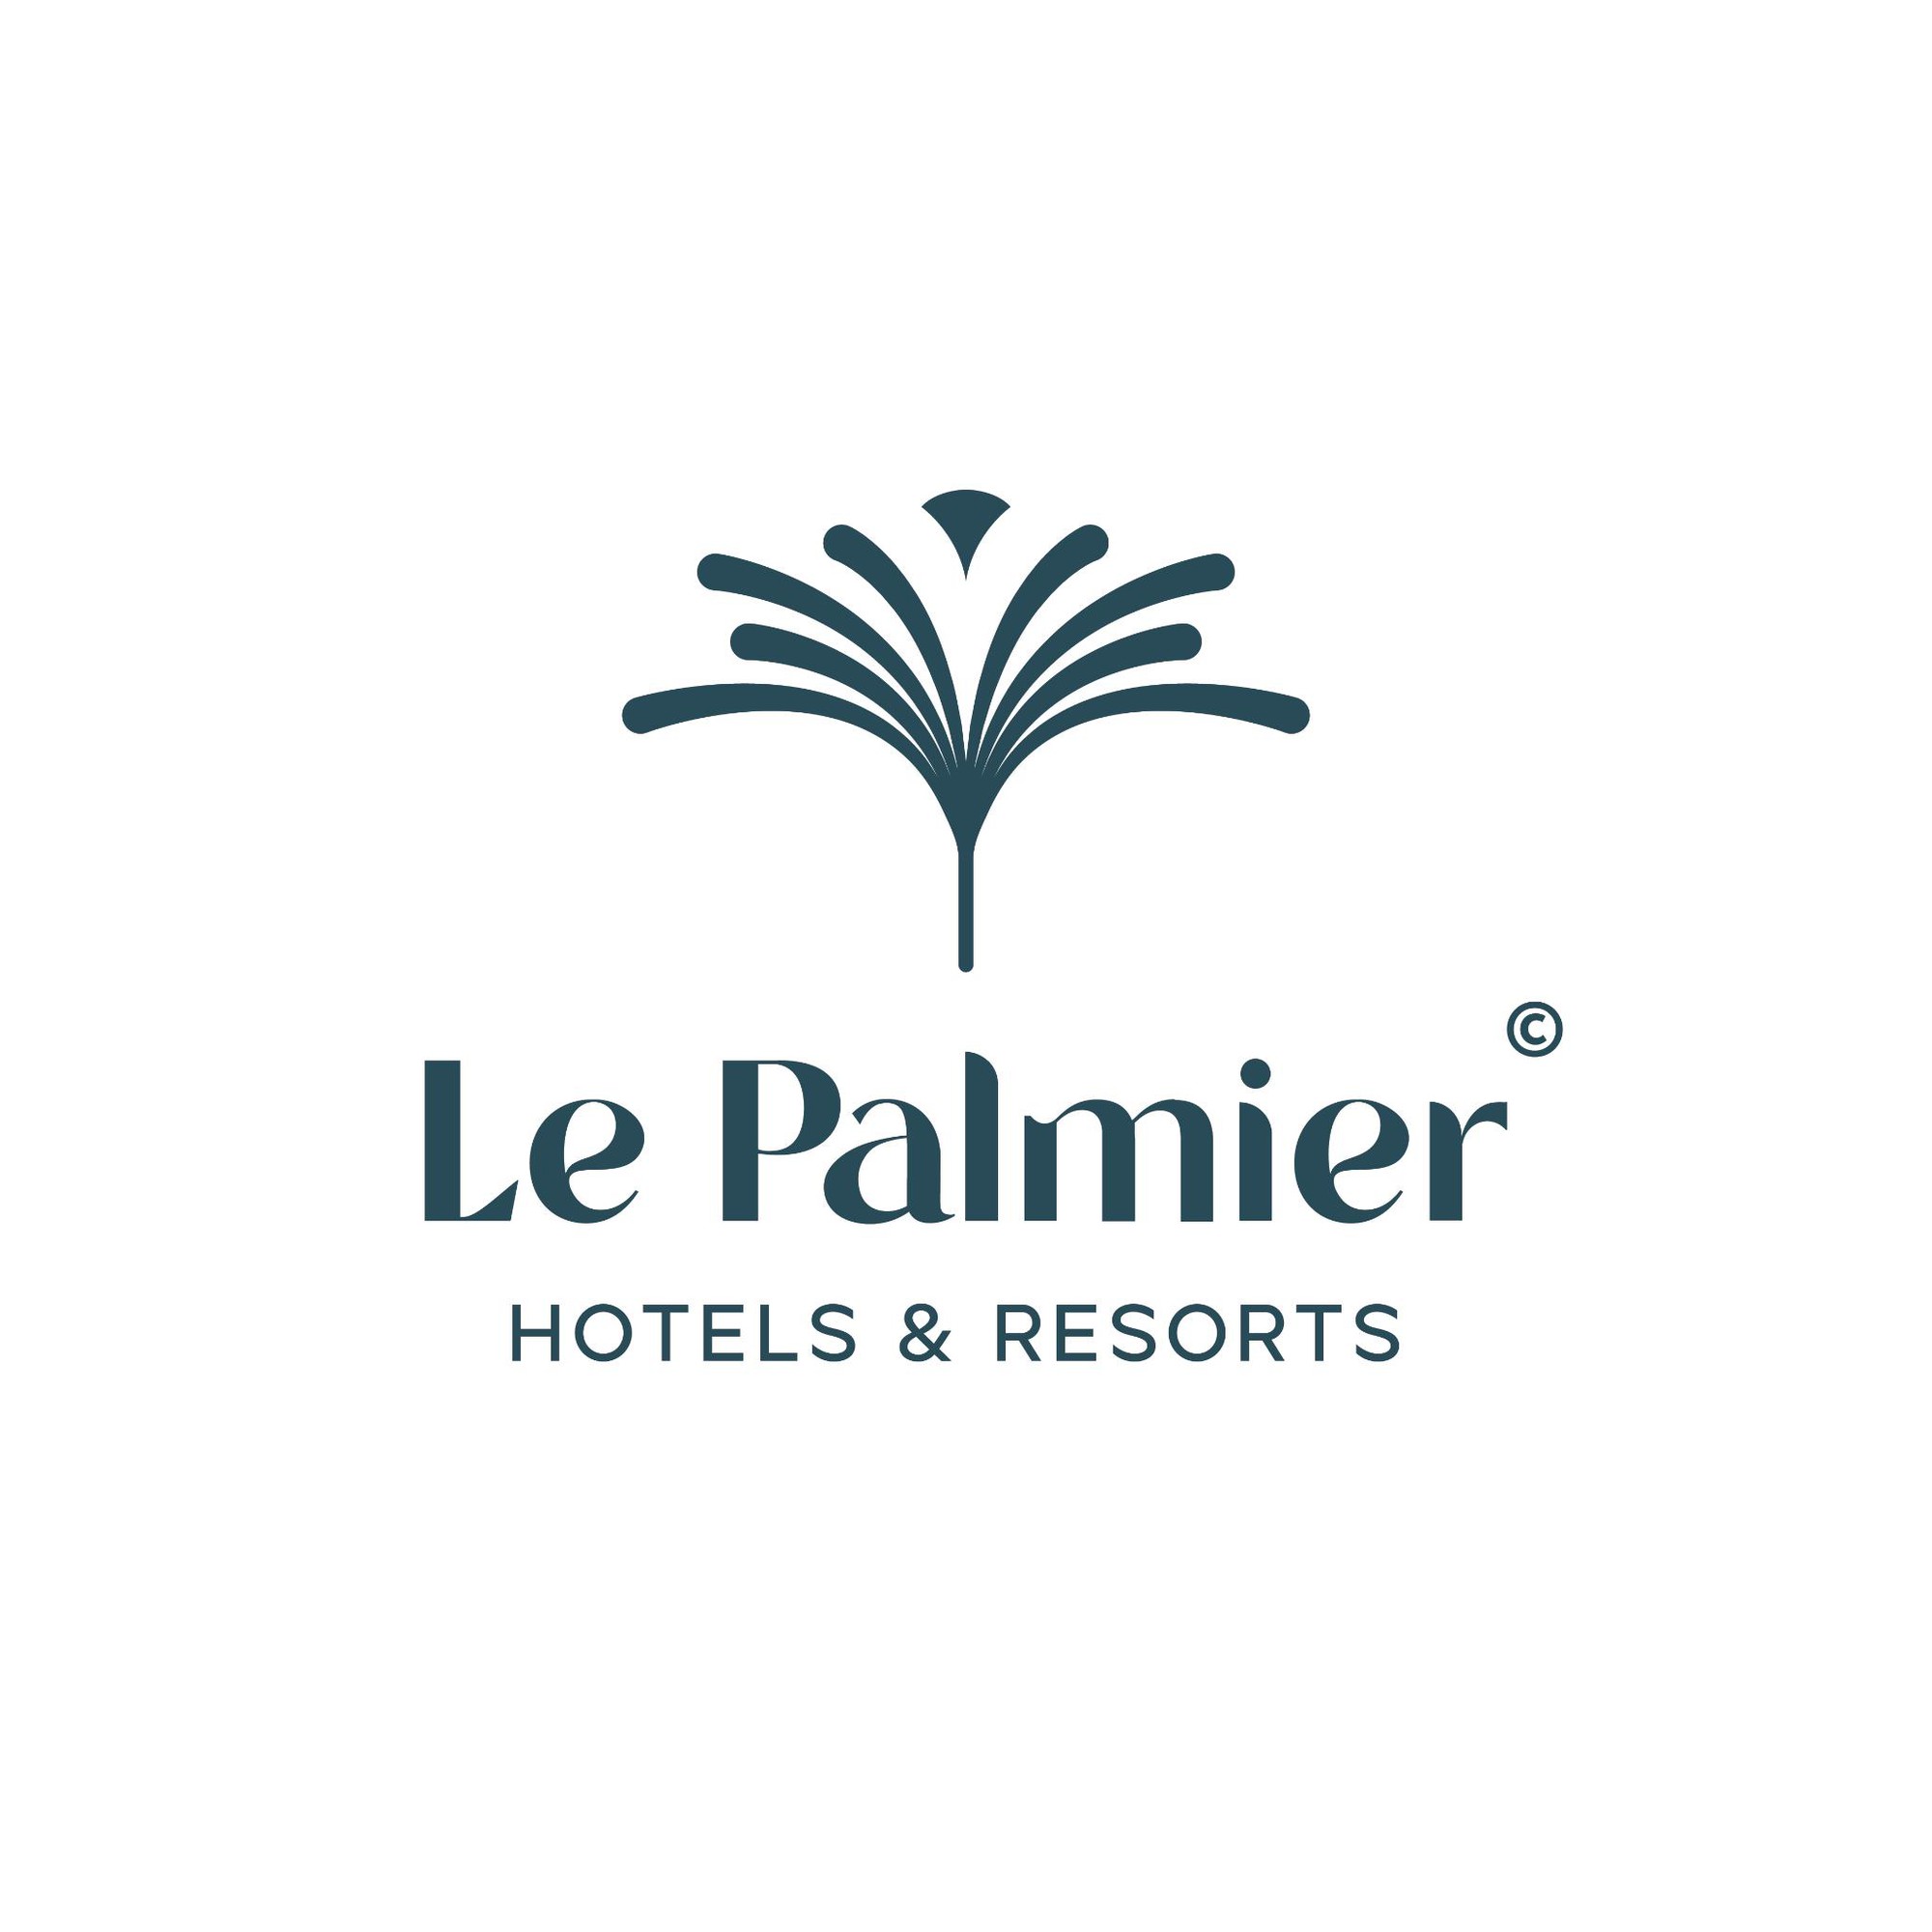 Đông Tây Hotel chính thức đổi tên thành Le Palmier Hotels & Resorts - Ảnh 1.